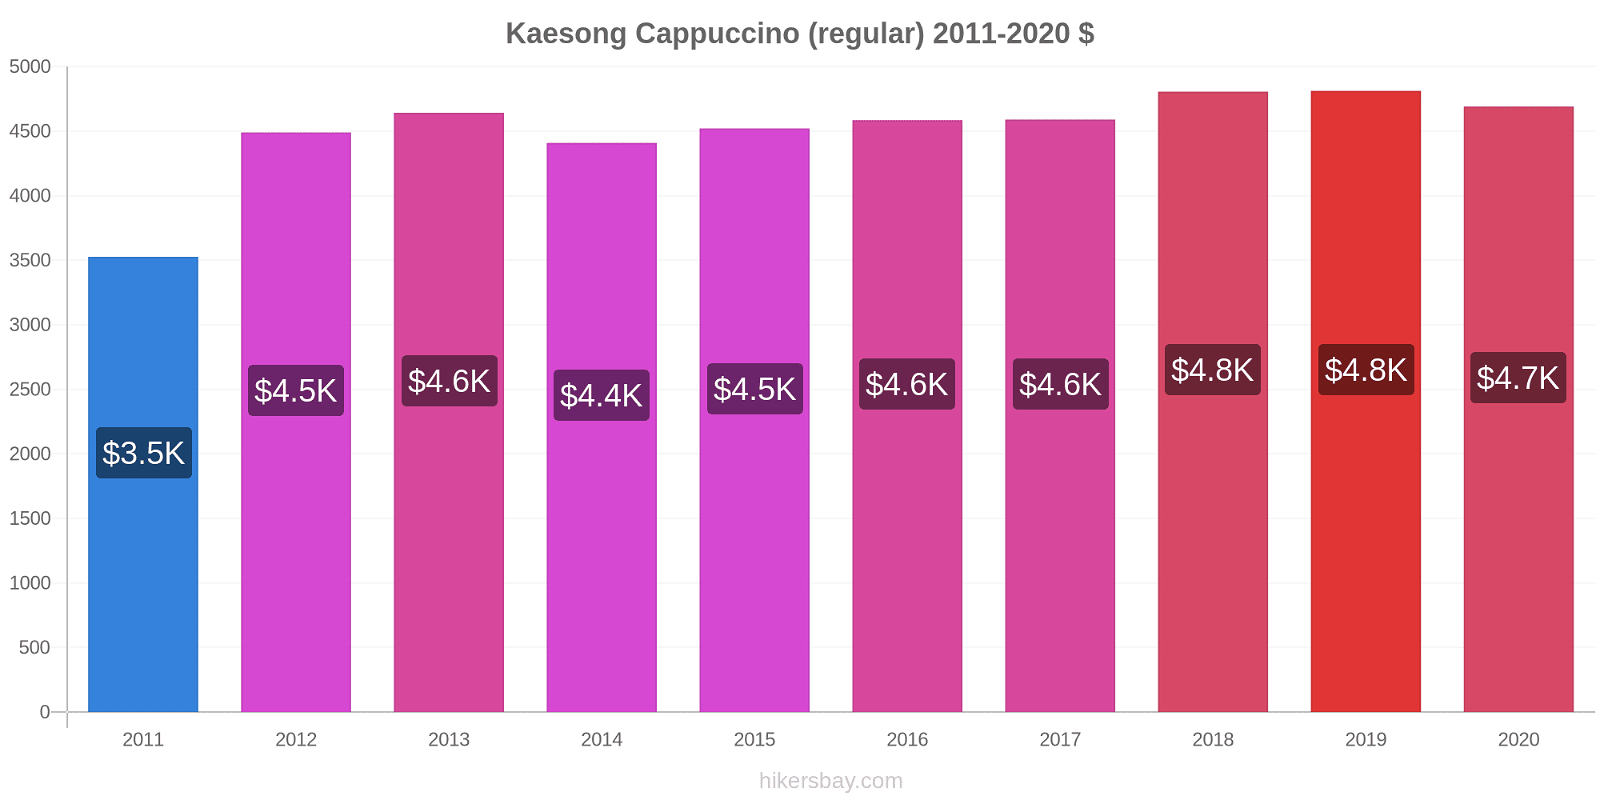 Kaesong price changes Cappuccino (regular) hikersbay.com